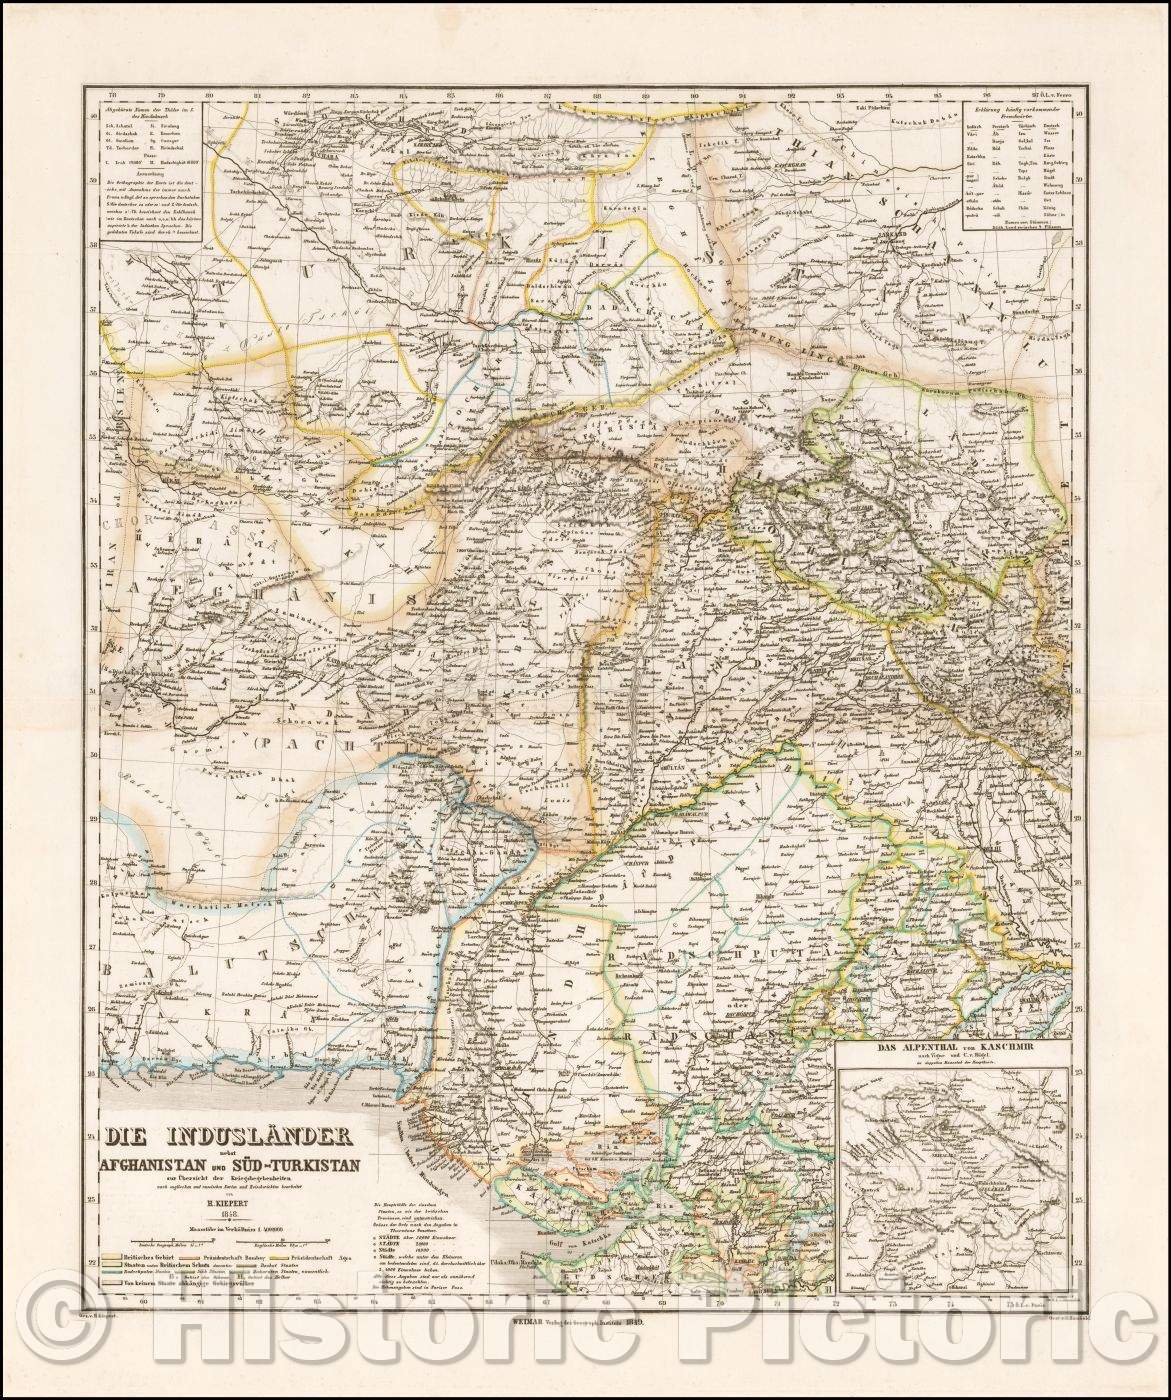 Historic Map - Die Induslander nebst Afghanistan und Sud-Turkistan/Map of Central Asia, published in Weimar by Heinrich Kiepert, 1849, Heinrich Kiepert - Vintage Wall Art